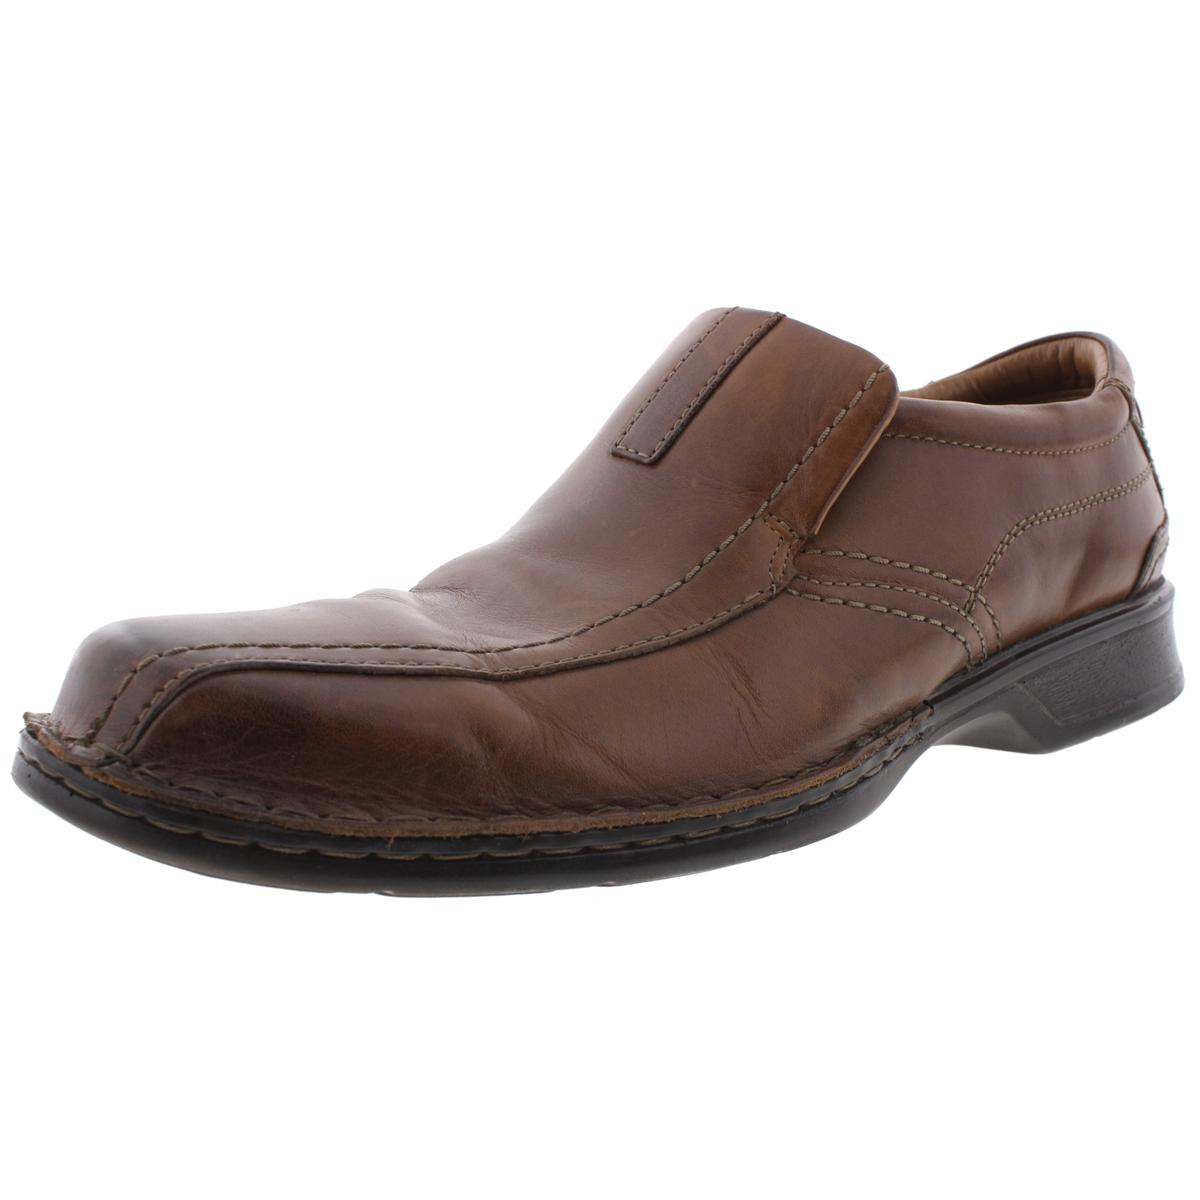 Clarks Men's Escalade Step Leather Slip-On Dress Loafer